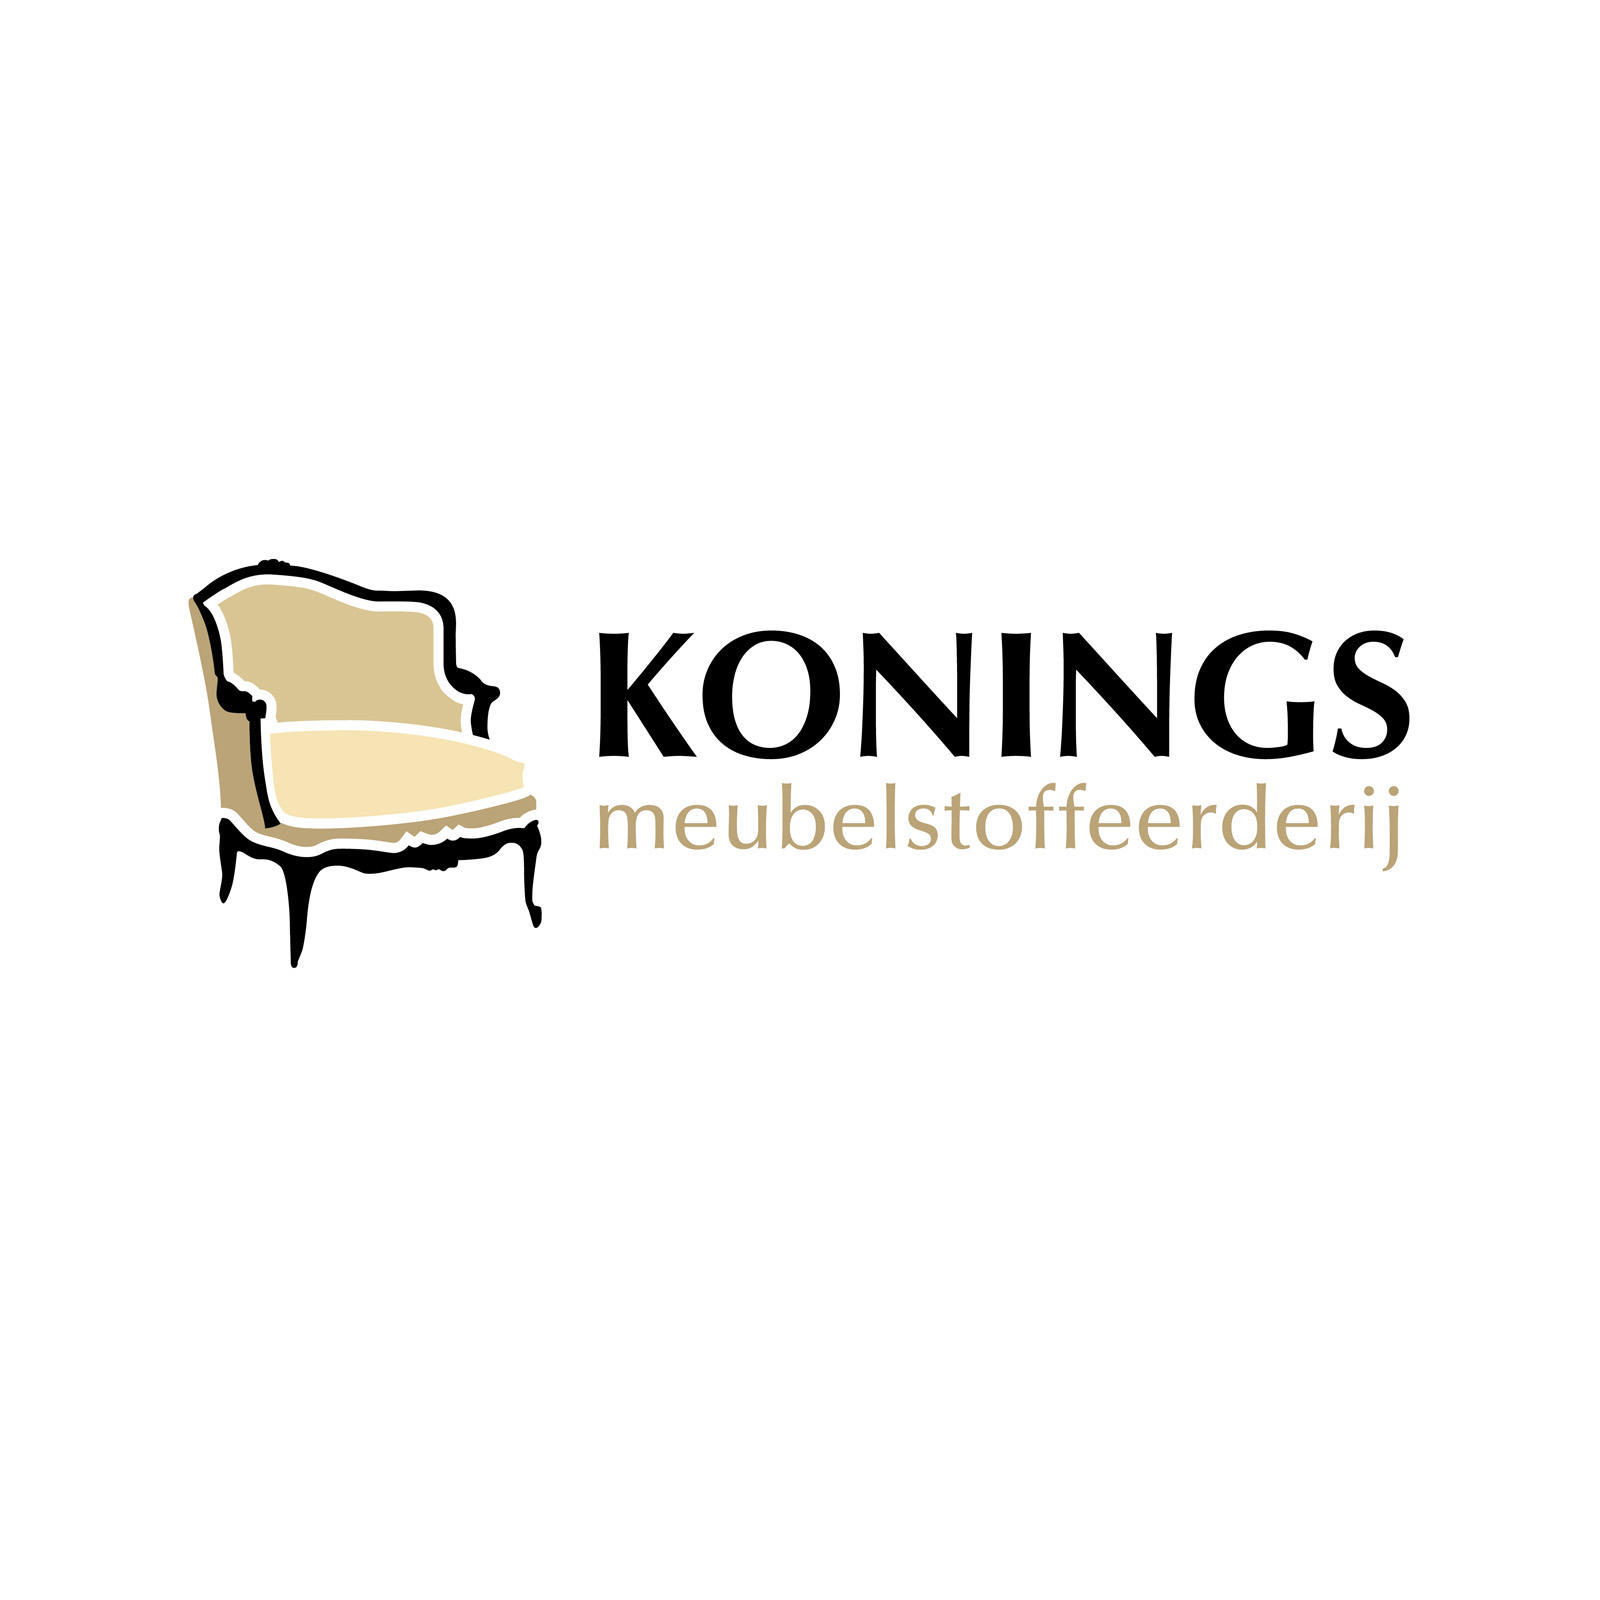 Konings Meubelstoffeerderij - Upholstery Shop - Weert - 0495 531 612 Netherlands | ShowMeLocal.com